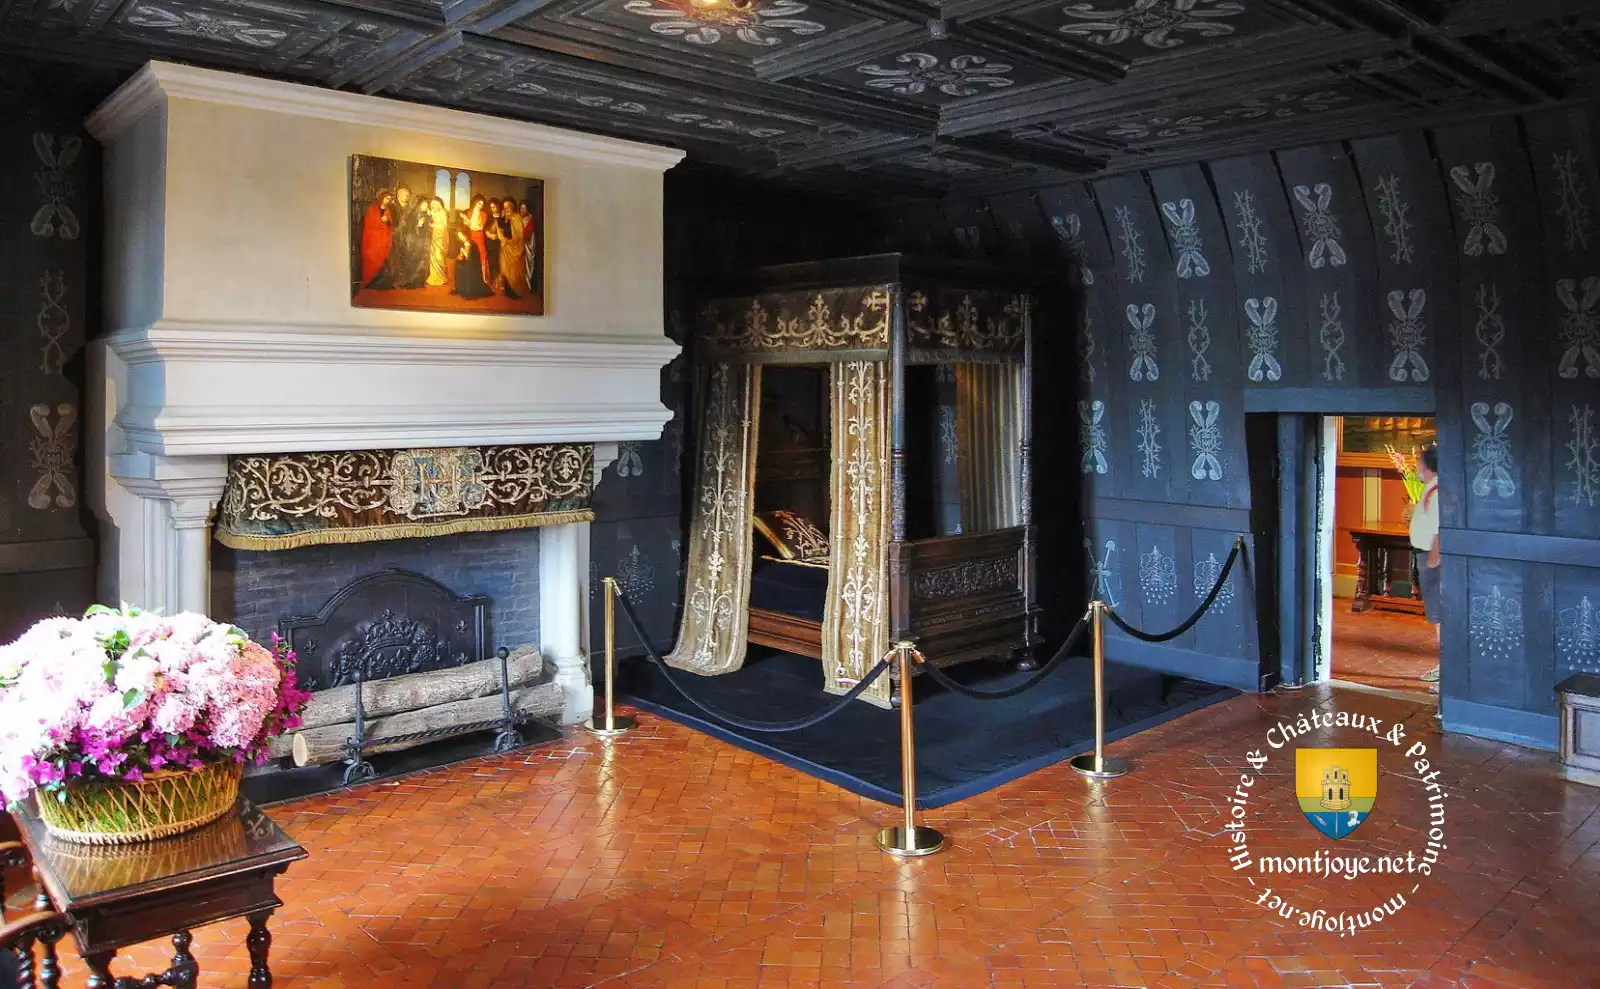 Chambre de Louise de Lorraine, une chambre sombre évoquant son deuil. Au dessus de la cheminée une scène religieuse du XVIe siècle.